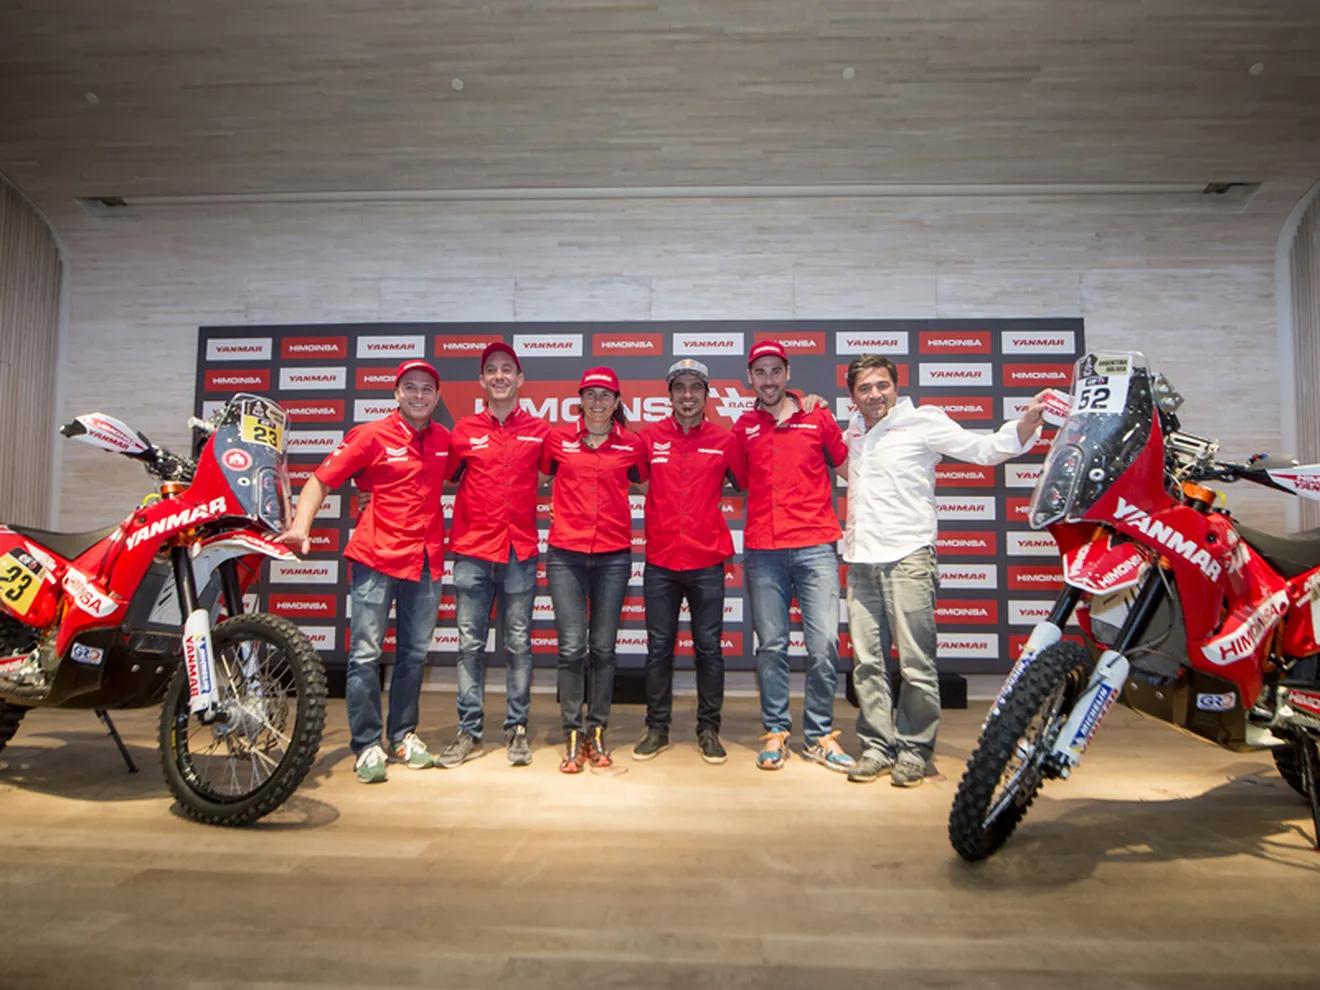 El Himoinsa Racing Team preparado para el Dakar 2016